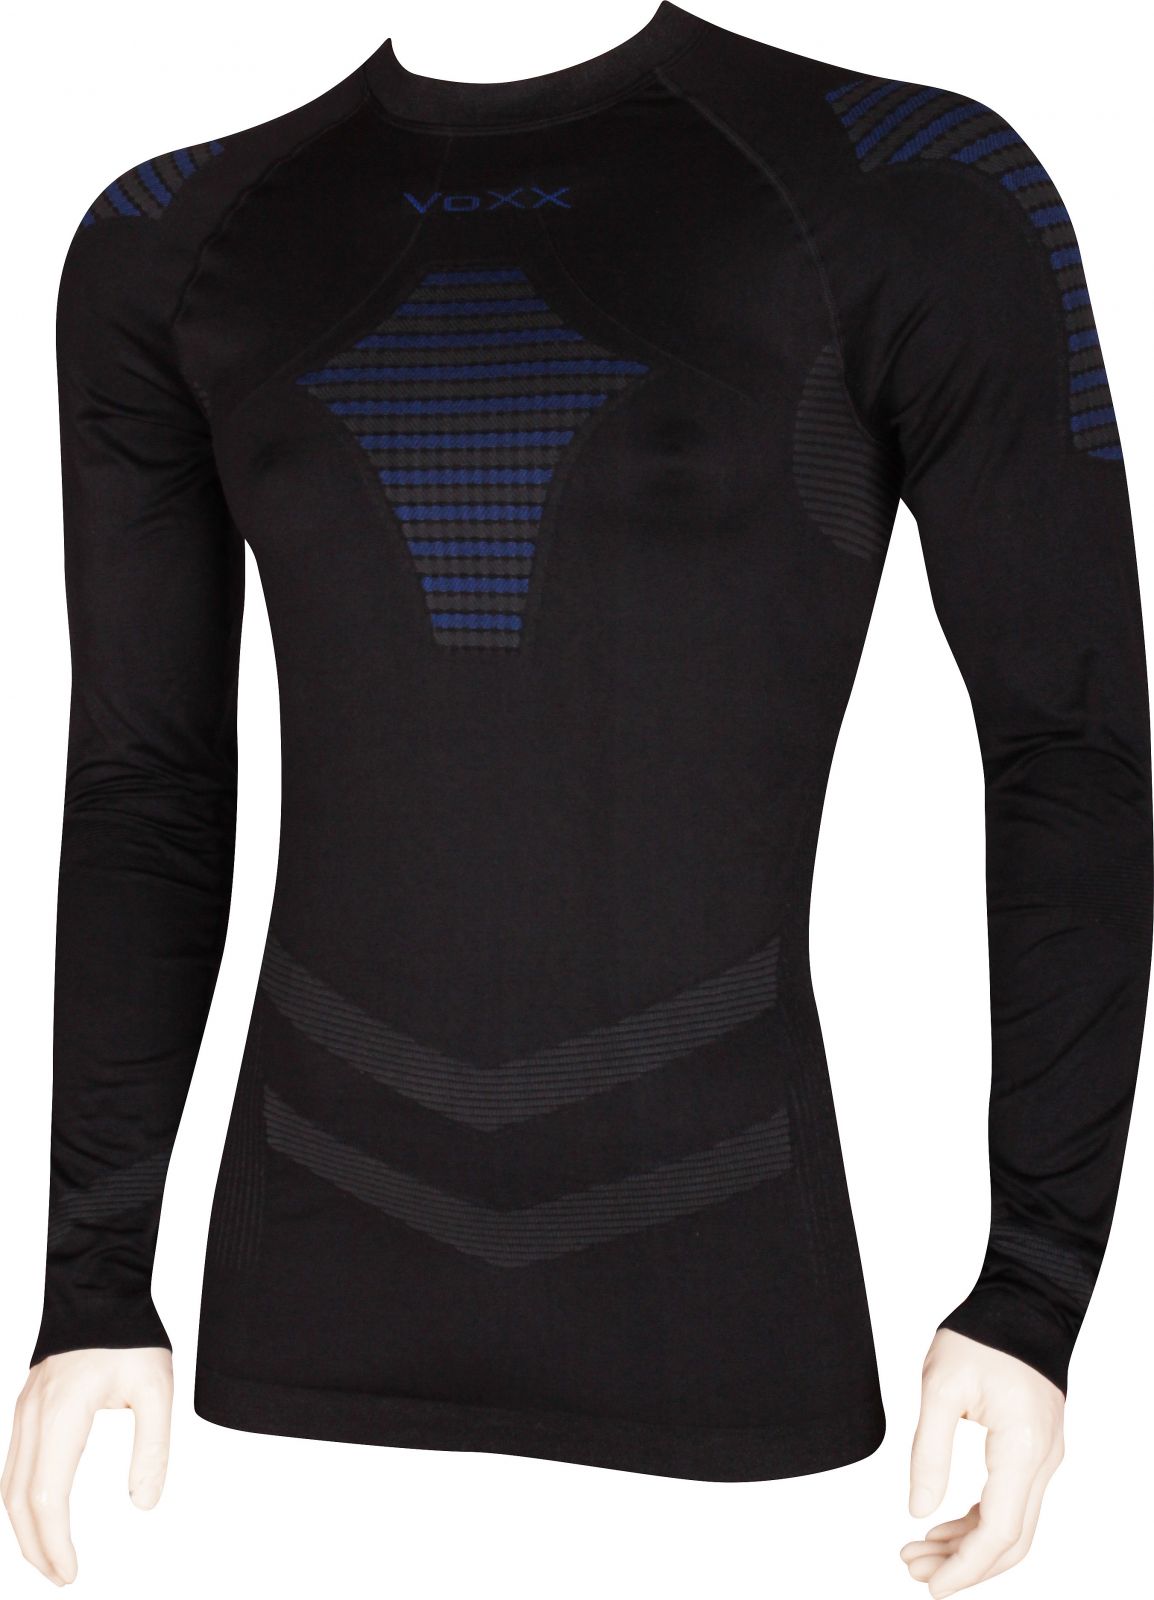 VoXX® AP02 pánské funkční tričko dlouhý rukáv černá / modrá - M-L 1 ks